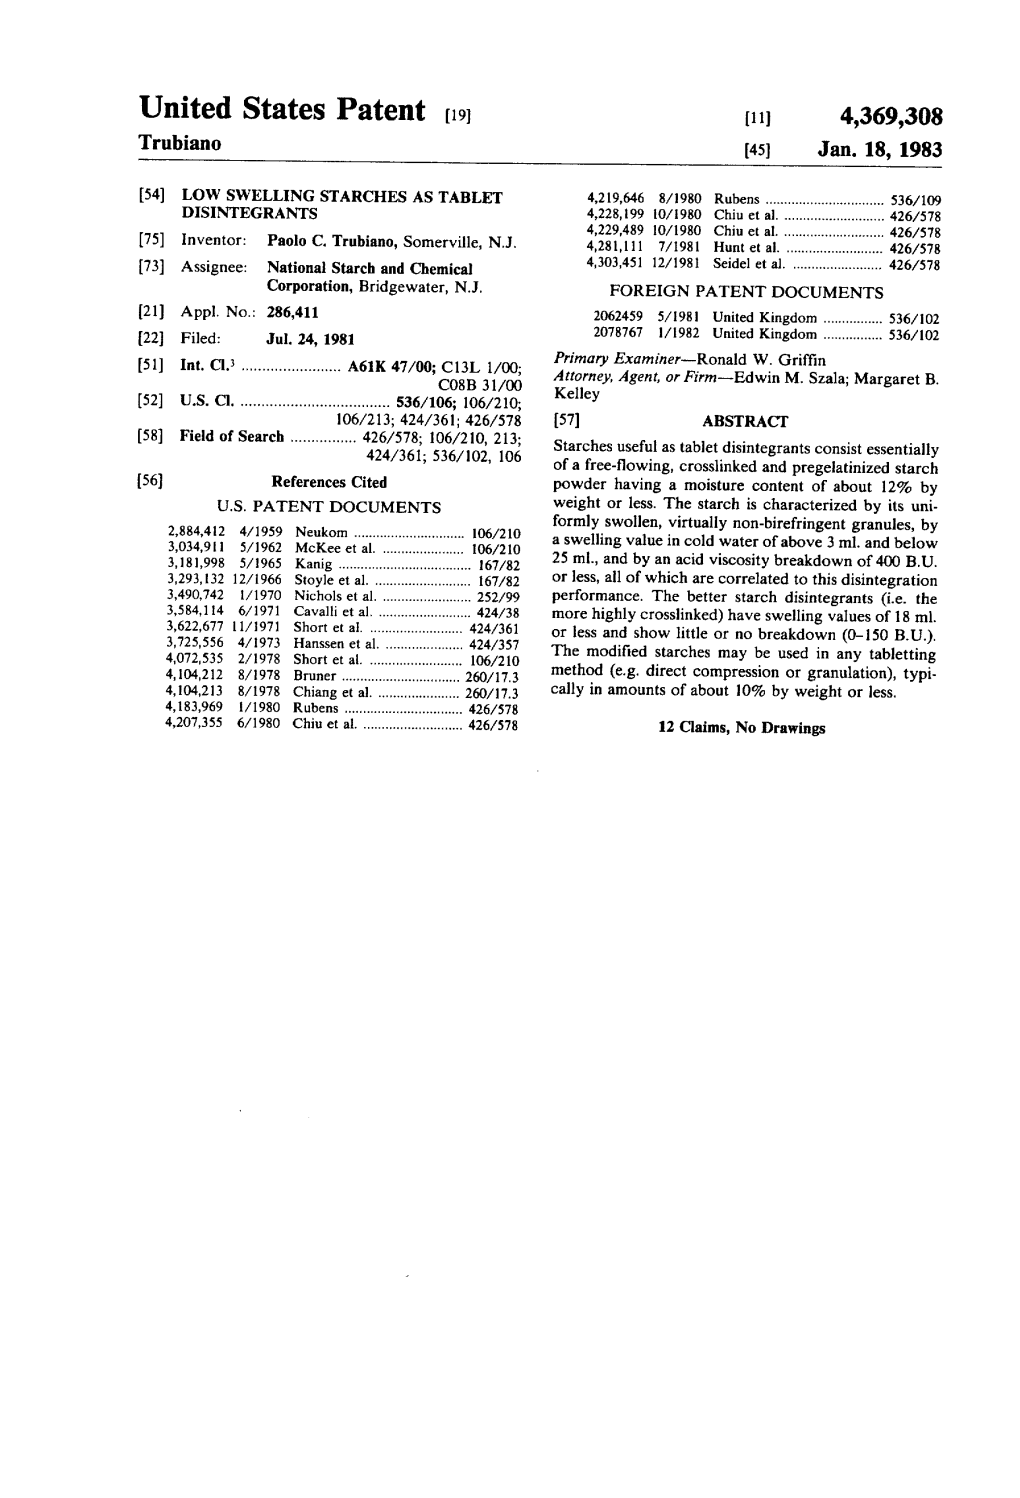 United States Patent (19) 11) 4,369,308 Trubiano (45) Jan